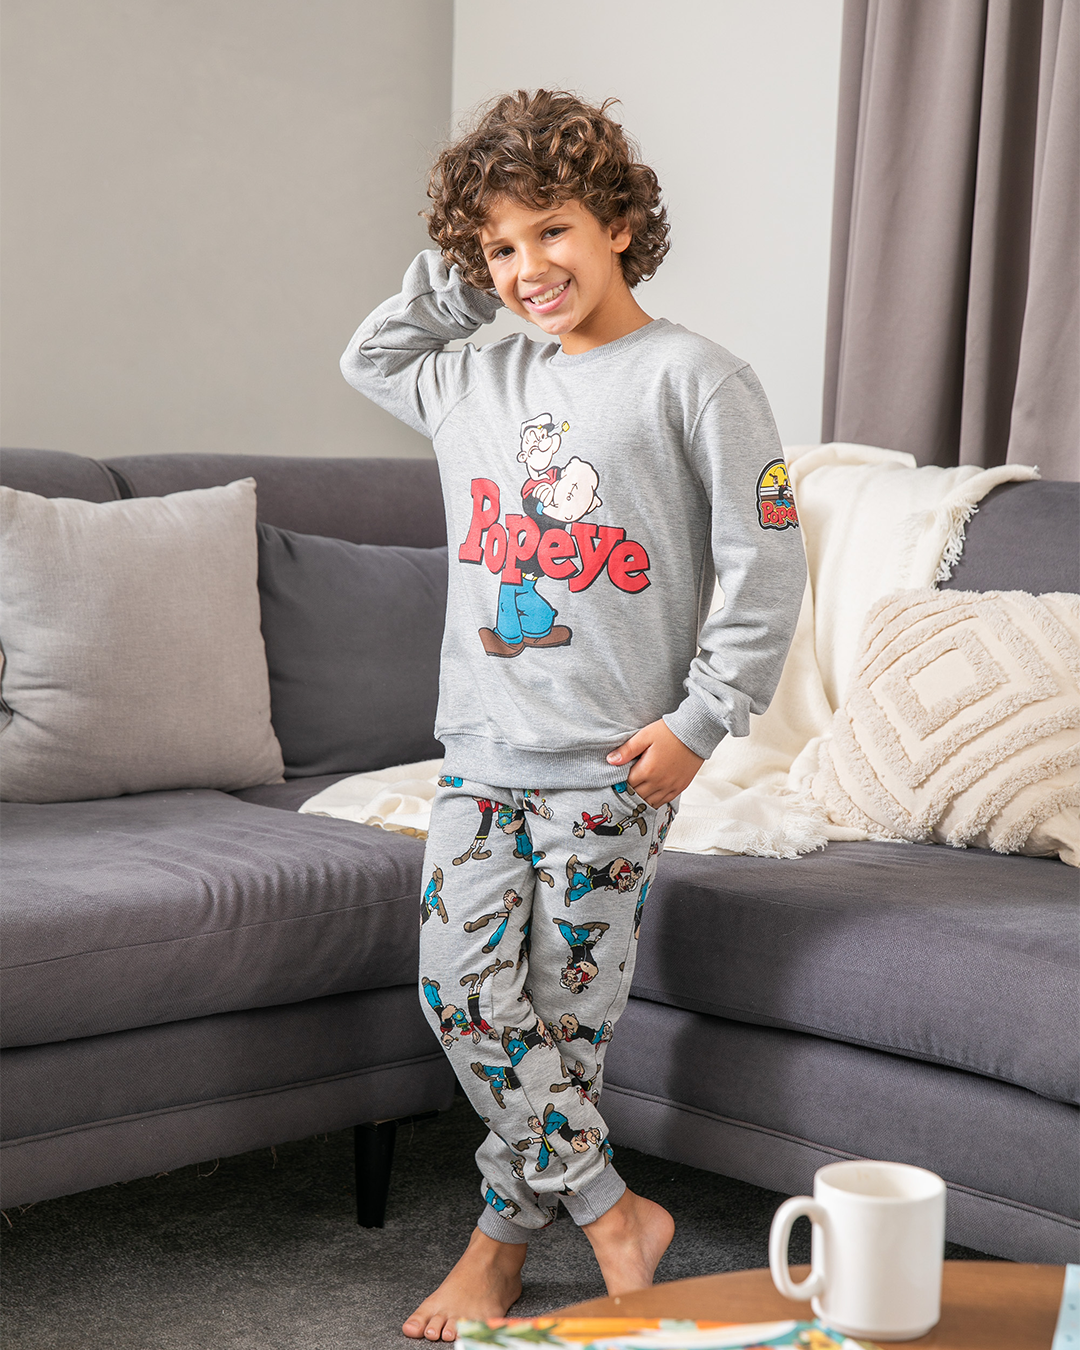  children's pajamas, Popeye